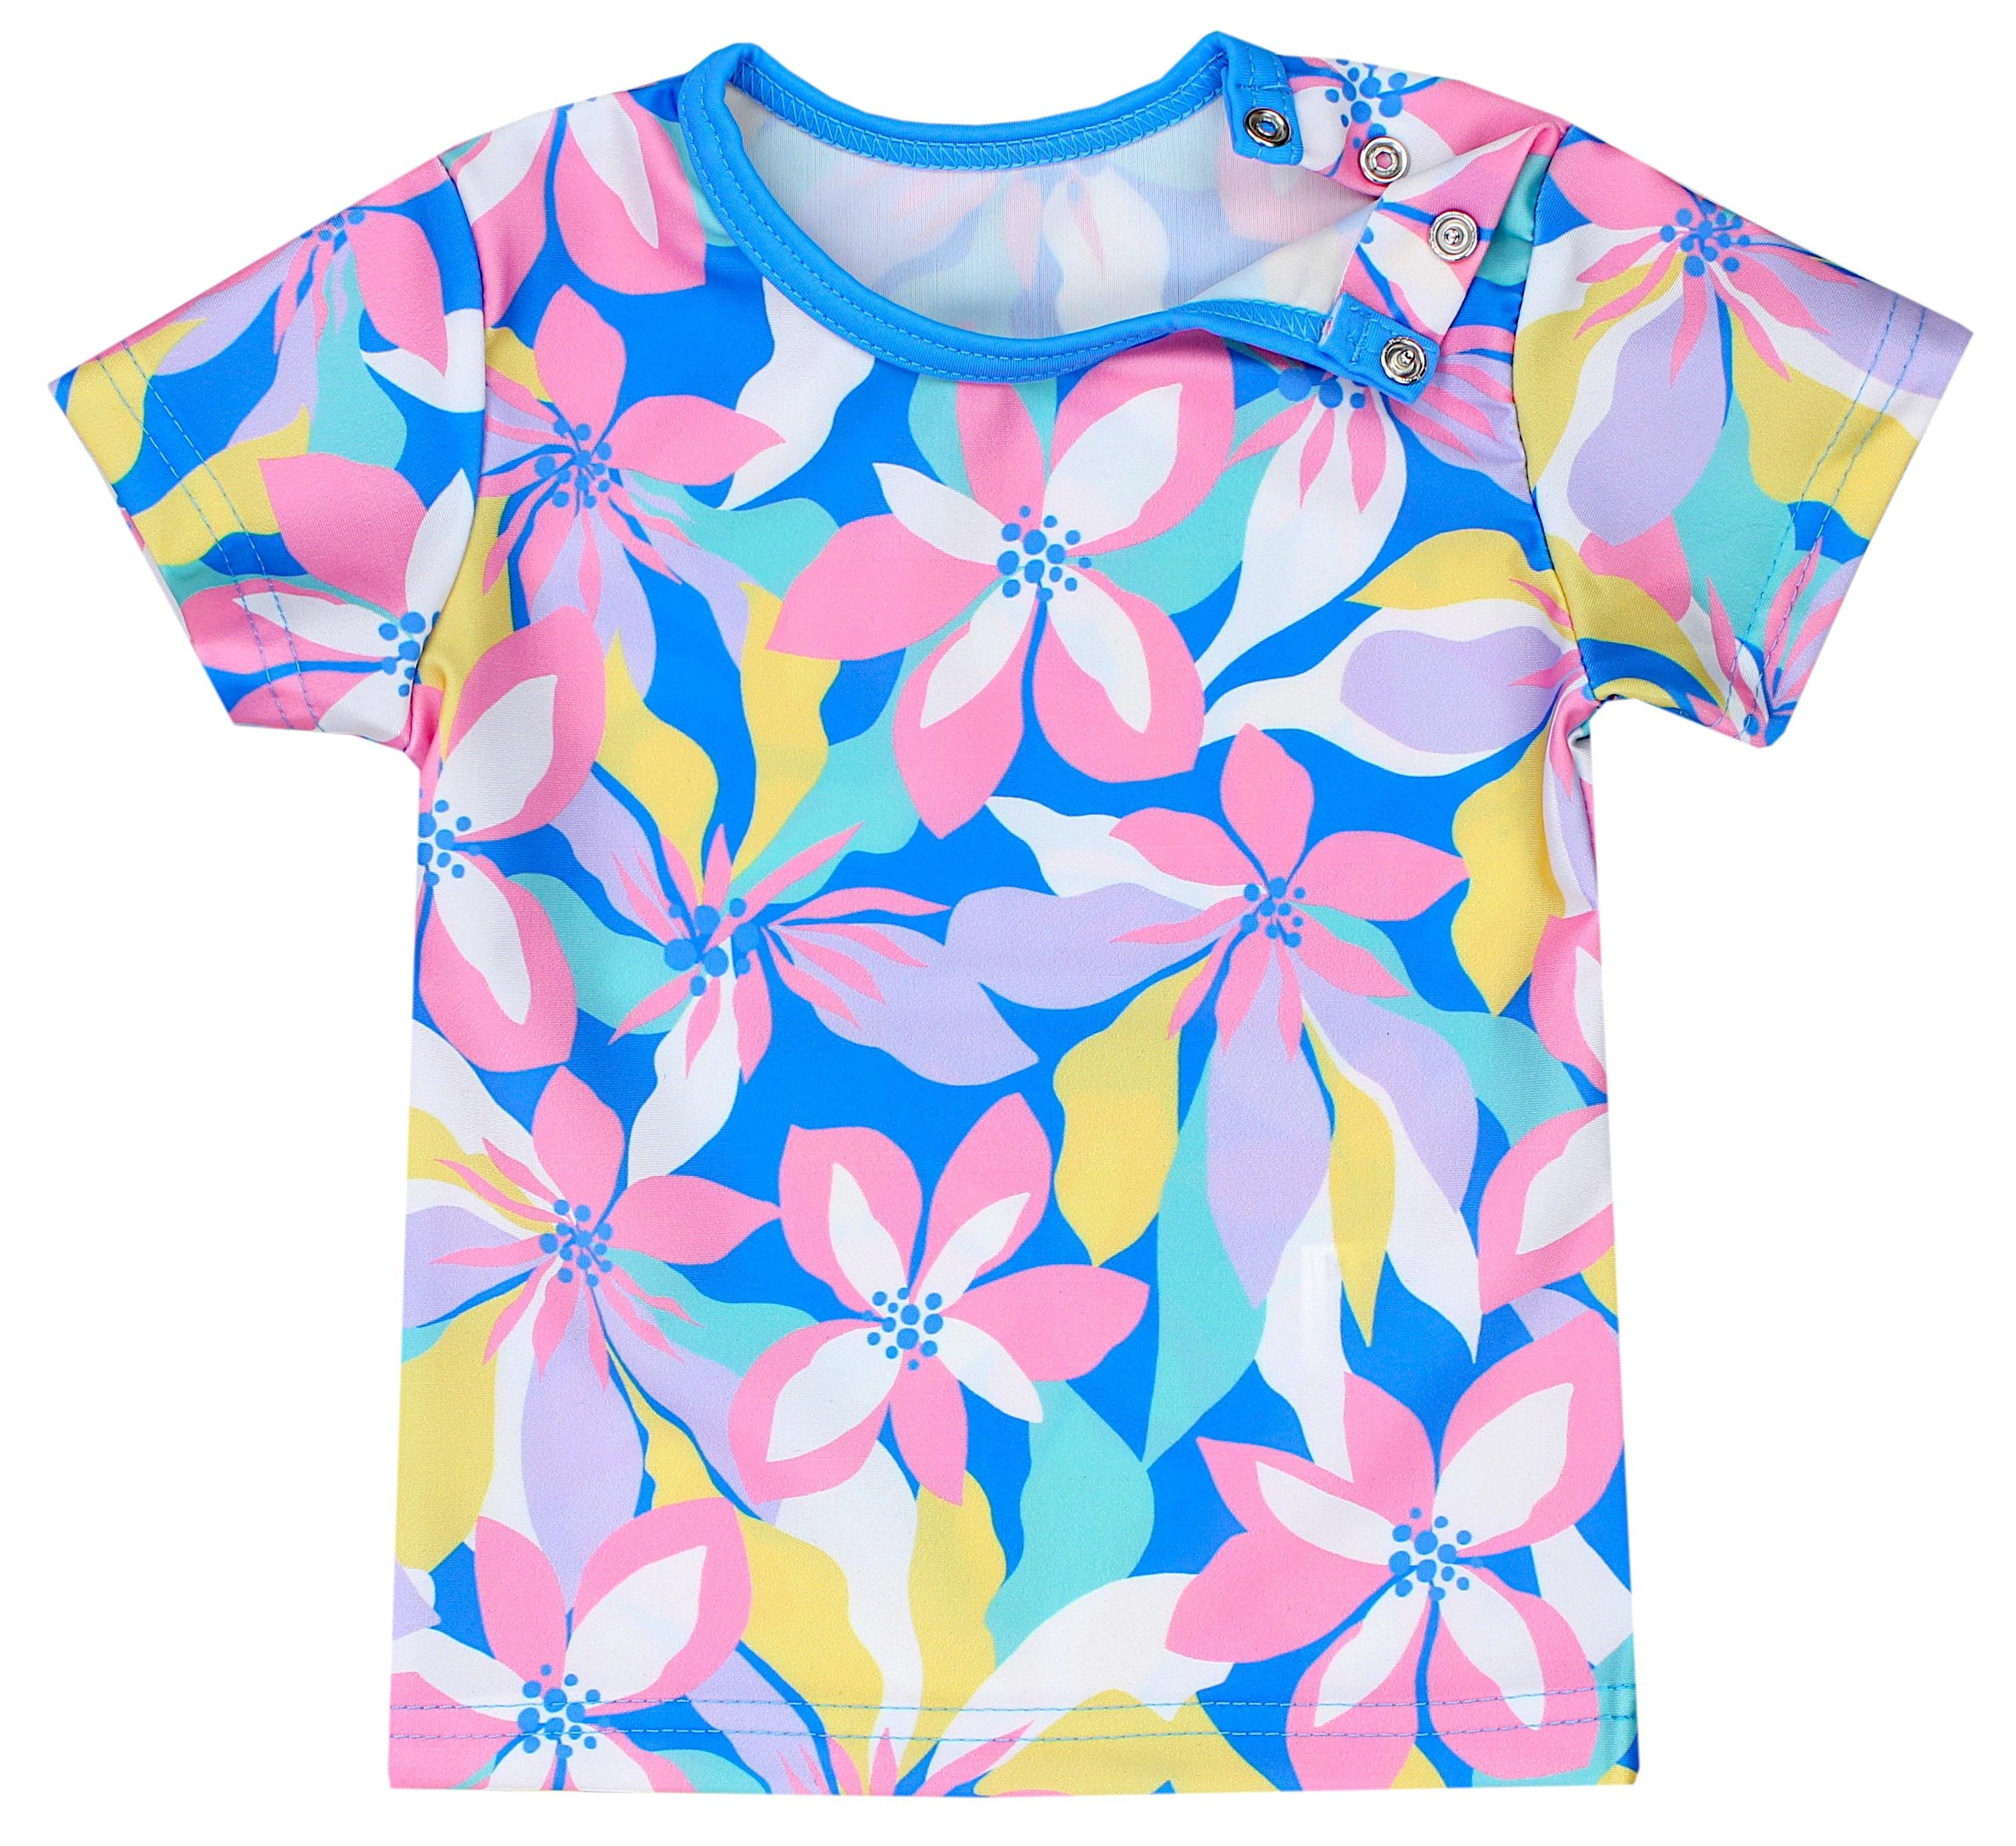 Shirt Rosa / / / Badeanzug Kinder Set Aquarti Gelb Blumen Mädchen Baby Badehose Zweiteiler UV-Schutz Blau Badeanzug